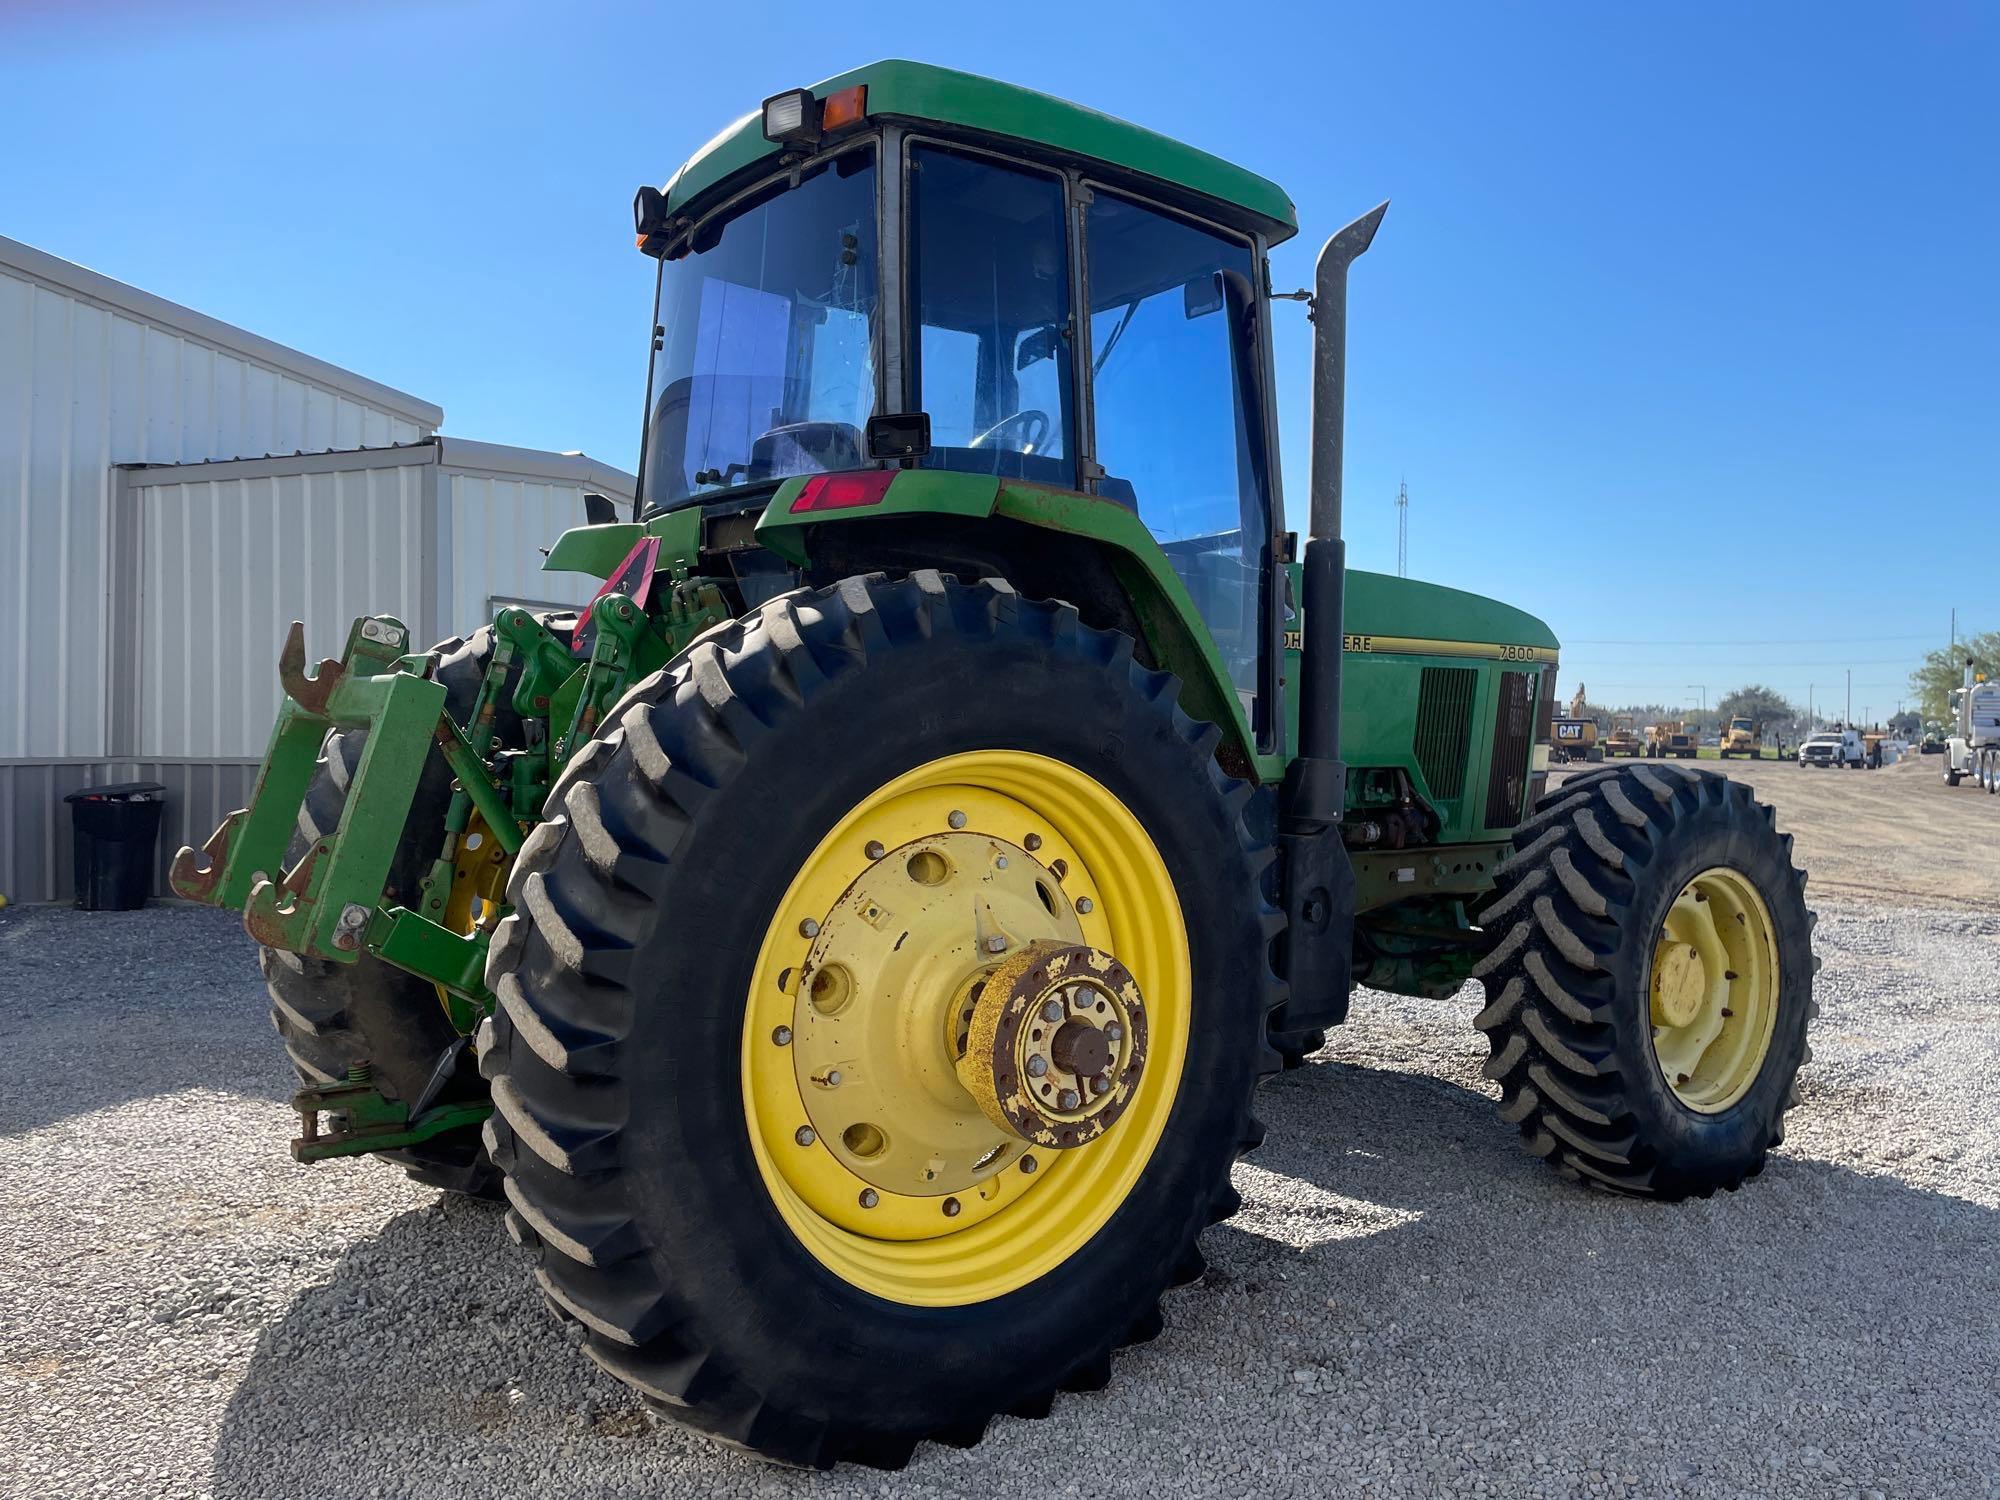 John Deere 7800 Farm Tractor